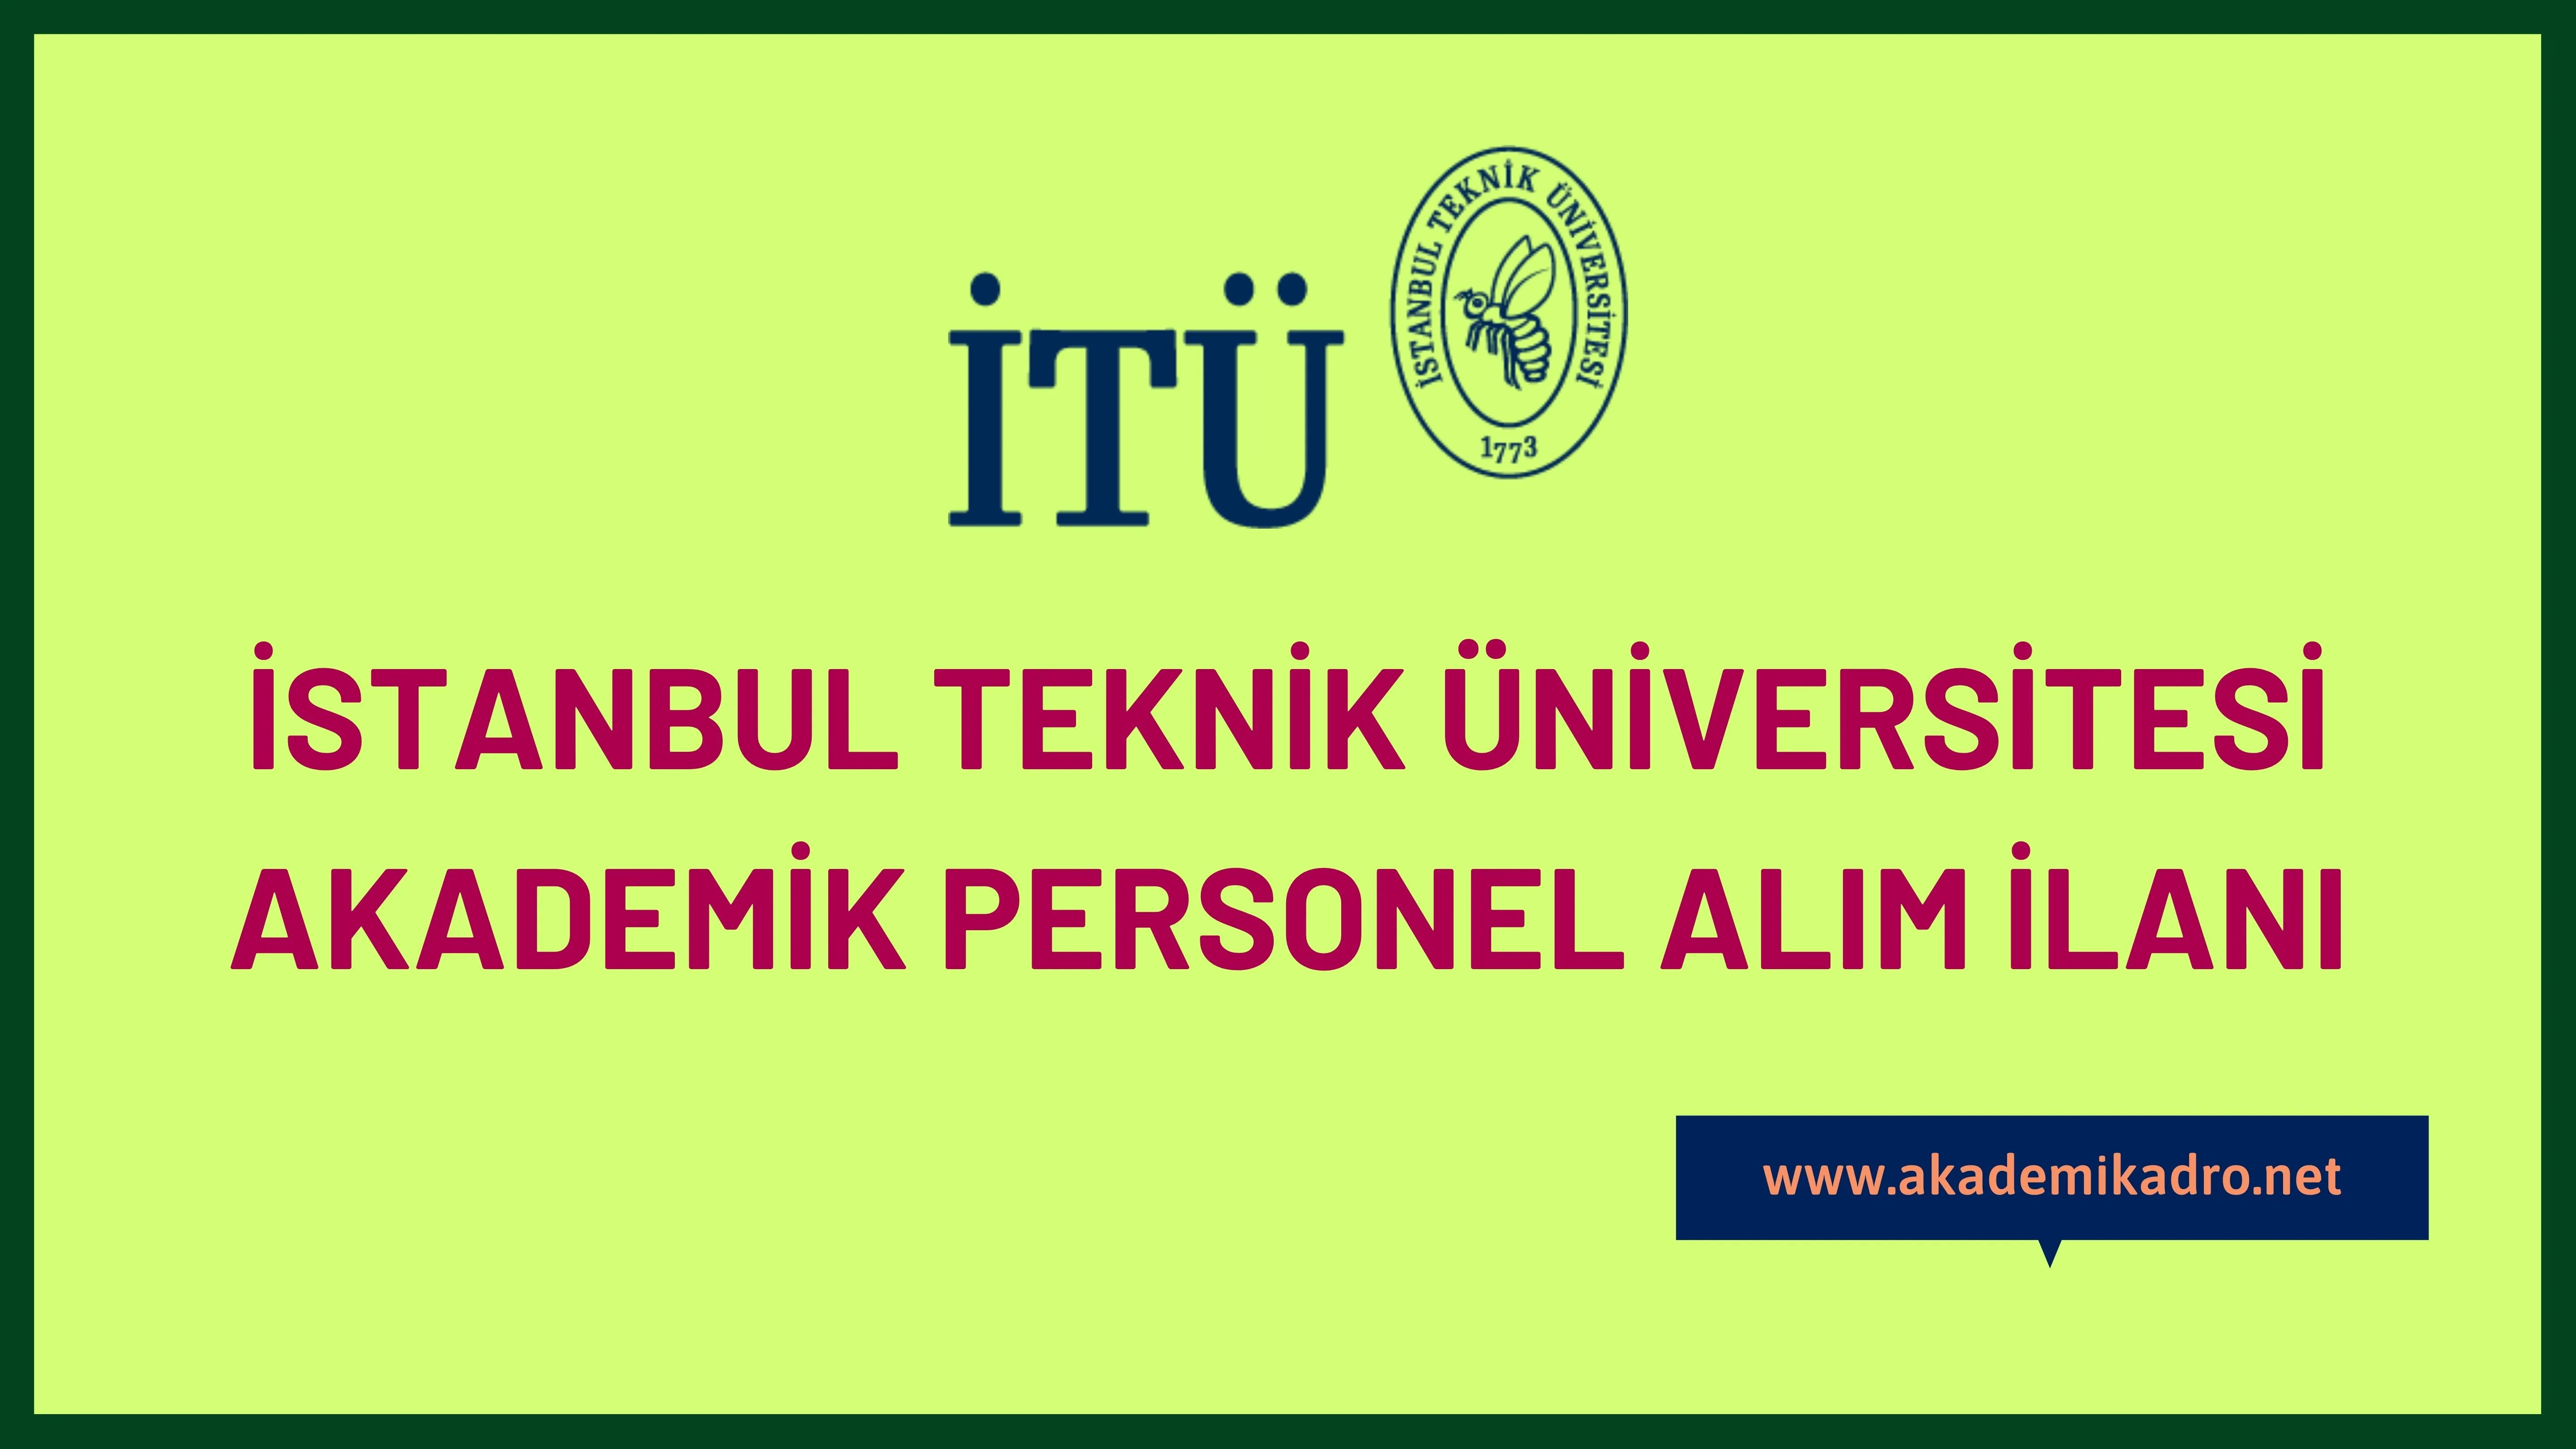 İstanbul Teknik Üniversitesi birçok alandan 84 akademik personel alacak.